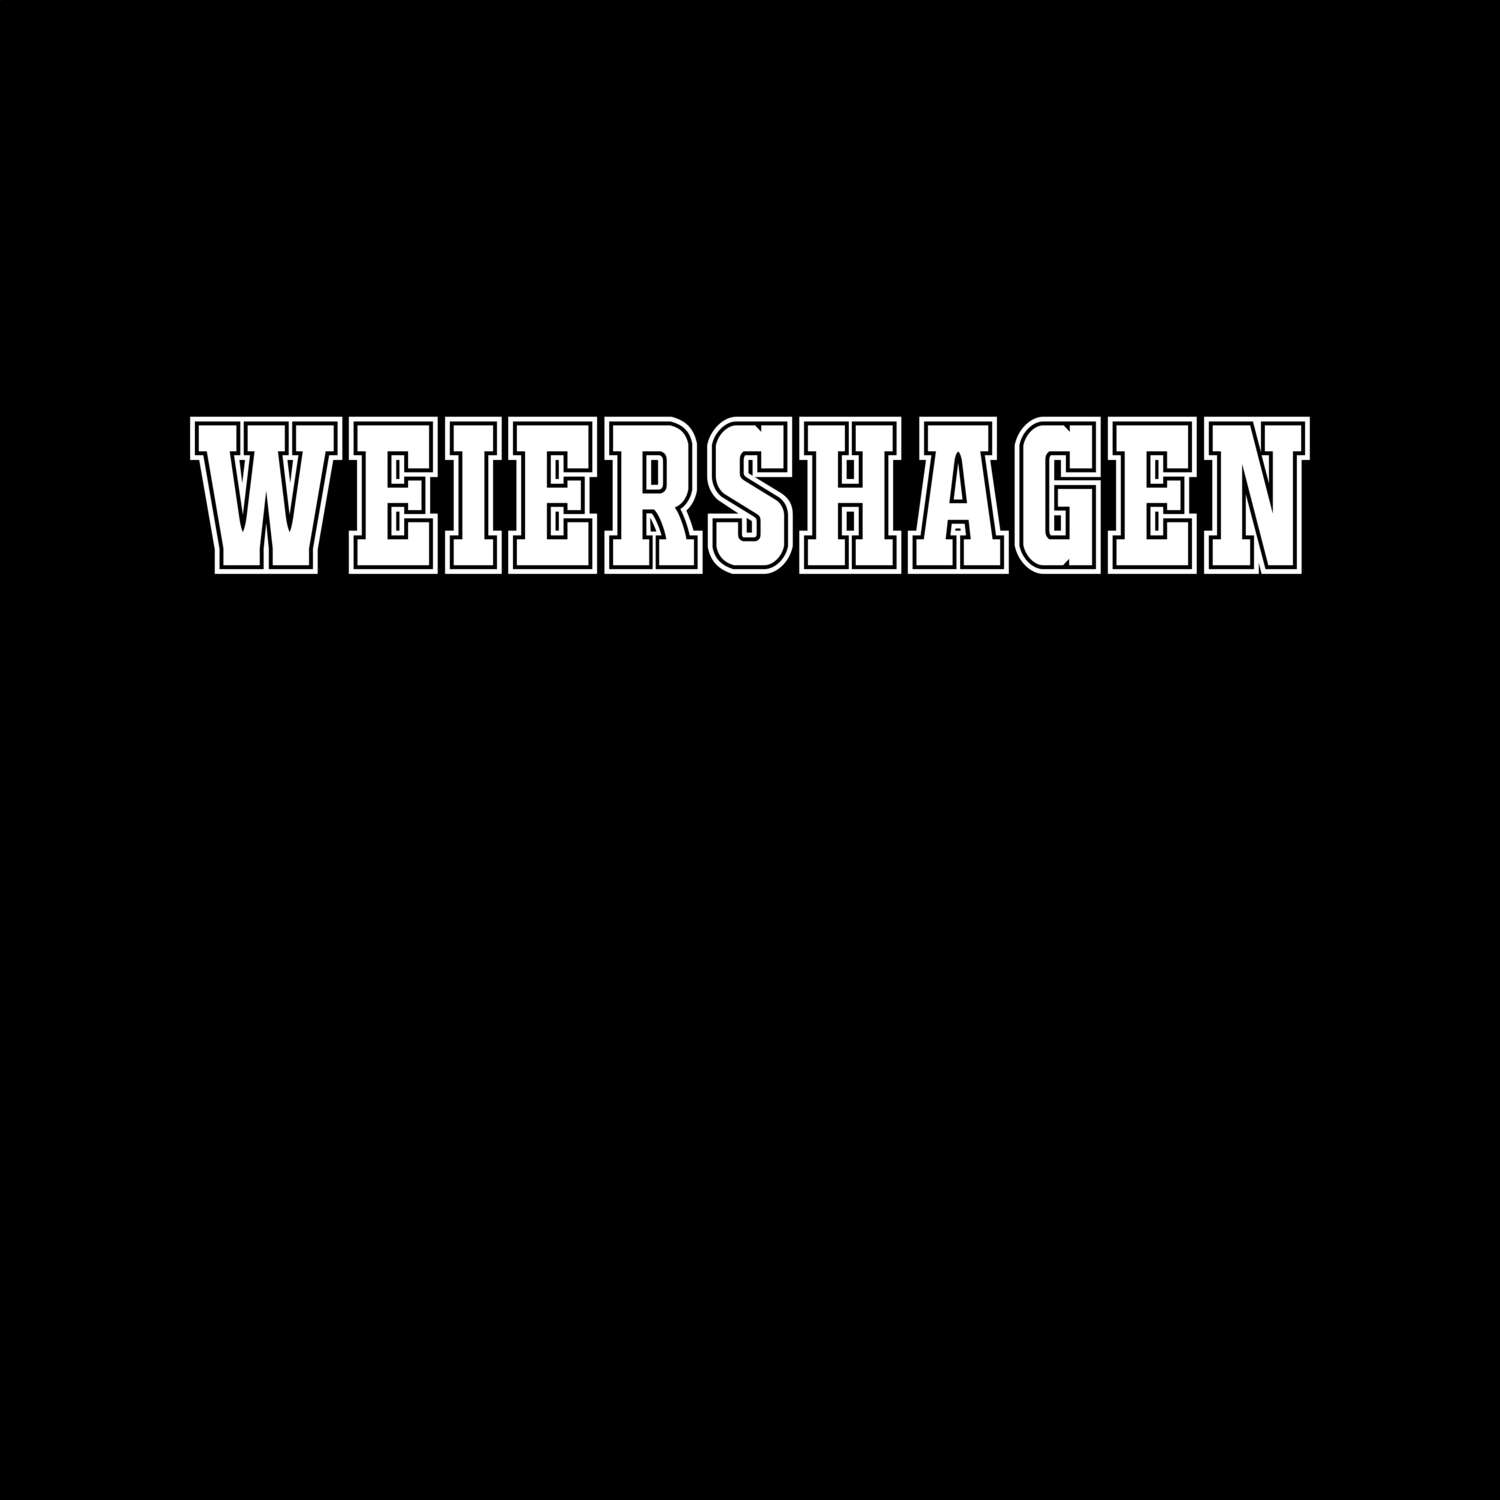 Weiershagen T-Shirt »Classic«